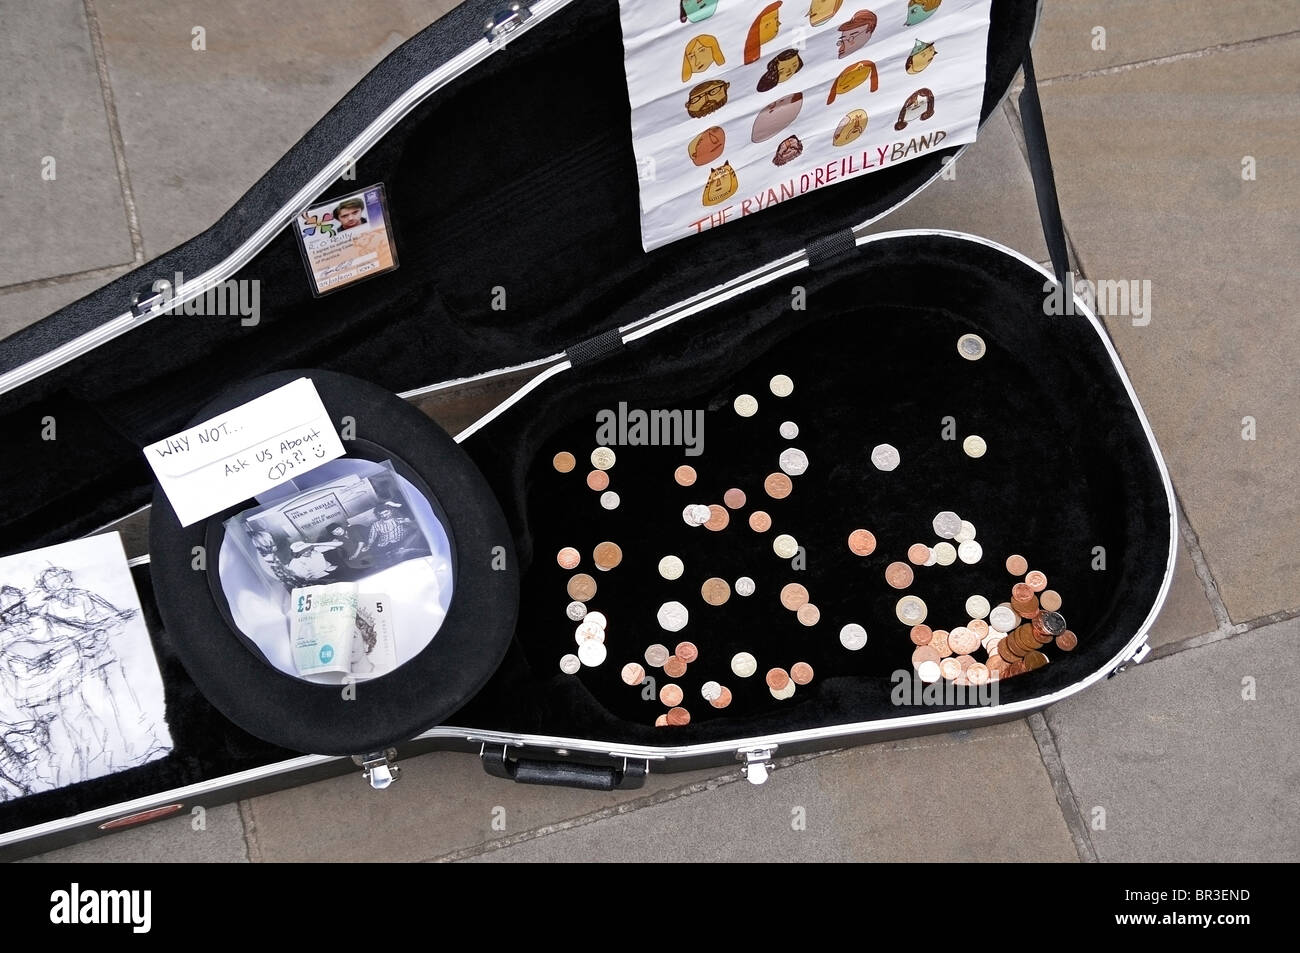 Les amuseurs publics étui à guitare, Oxford, UK. Banque D'Images